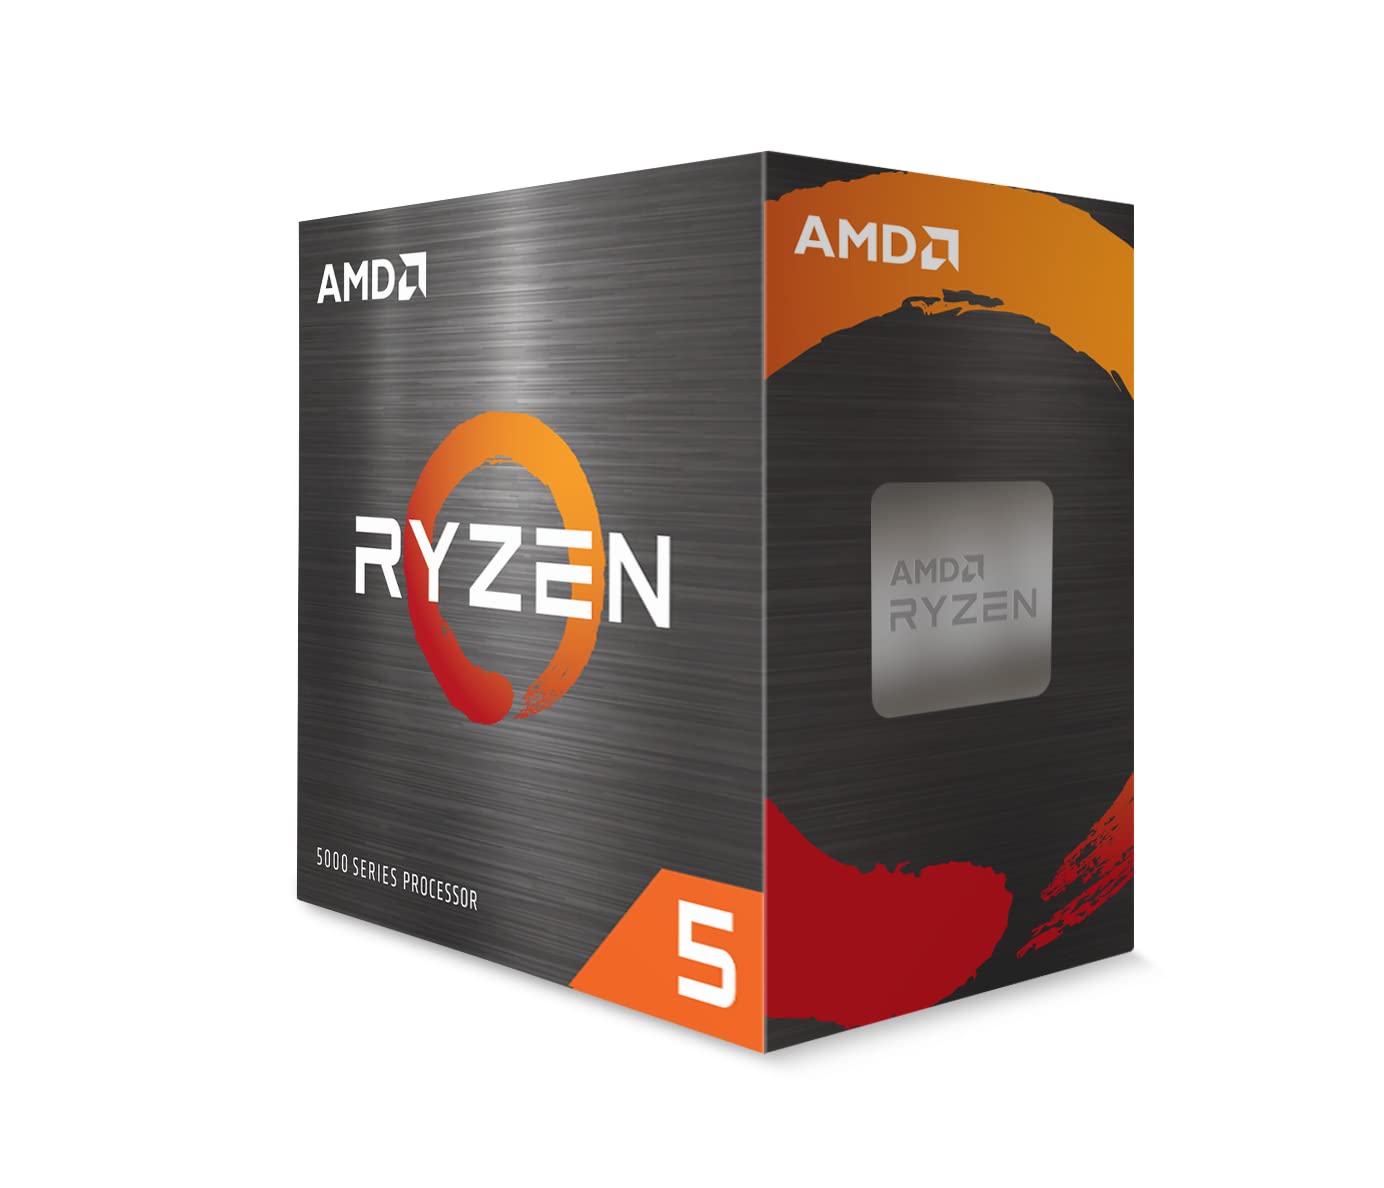 AMD Ryzen 5 5500 Processor - 6 Cores, 12 Threads, Base Clock 3.6GHz, Max Boost Clock 4.2GHz, AM4 Socket, 7nm FinFET Technology, 65W TDP